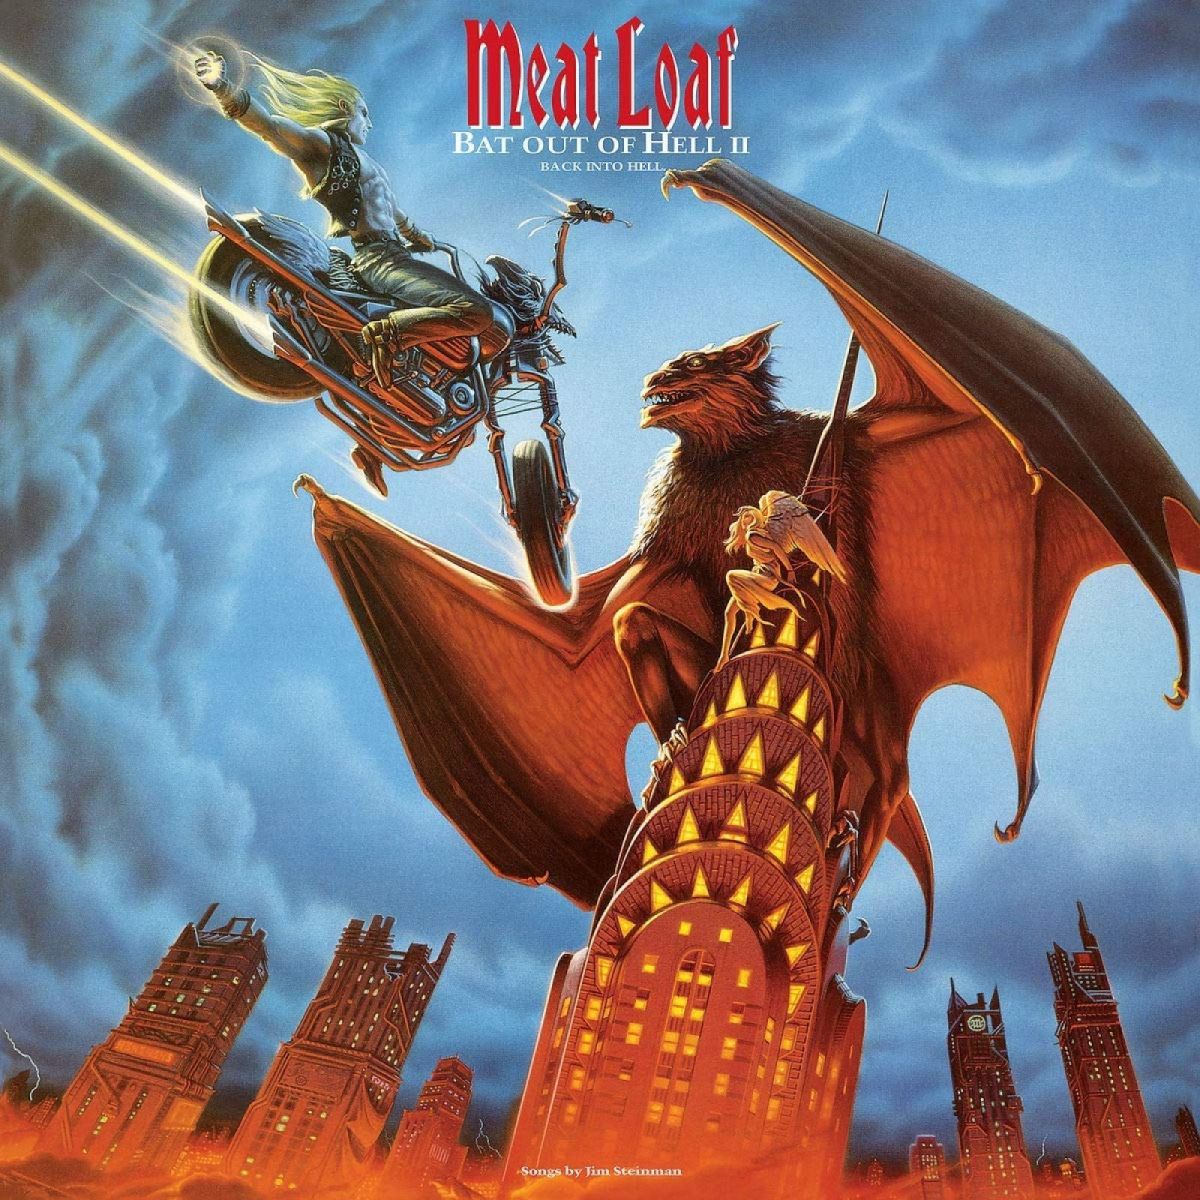 Bat Out of Hell II: De volta ao inferno" capa do álbum